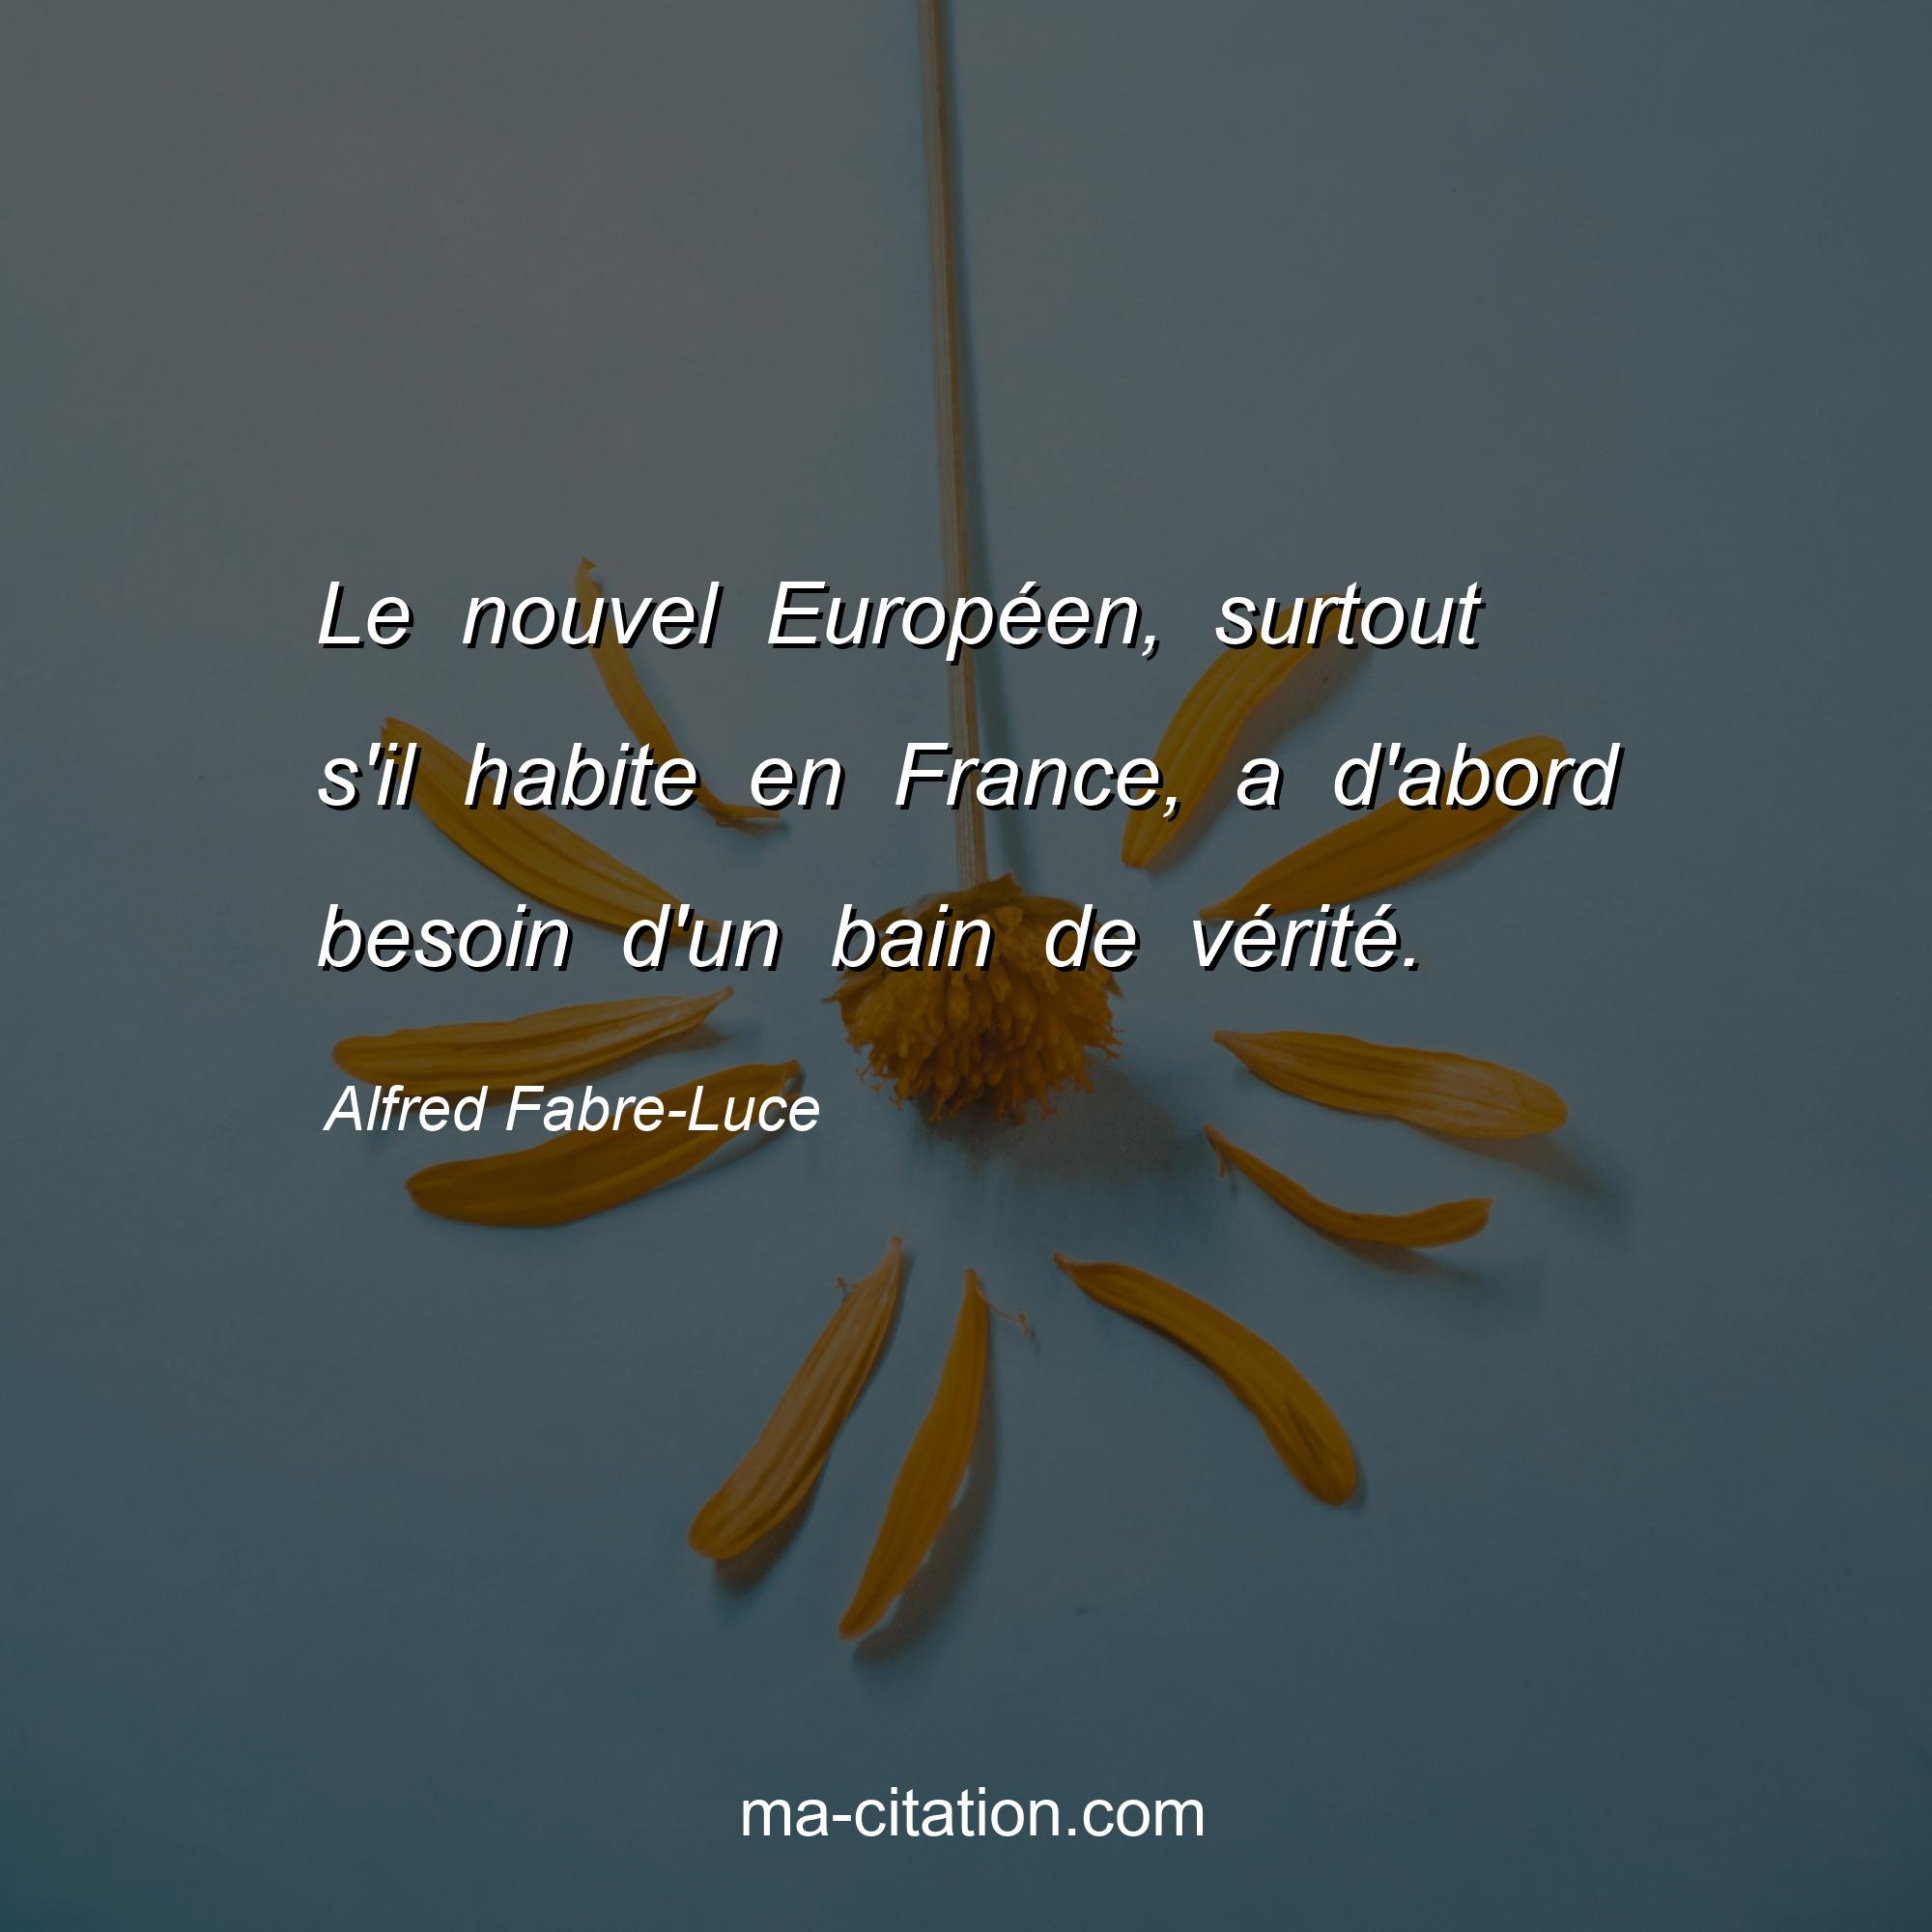 Alfred Fabre-Luce : Le nouvel Européen, surtout s'il habite en France, a d'abord besoin d'un bain de vérité.